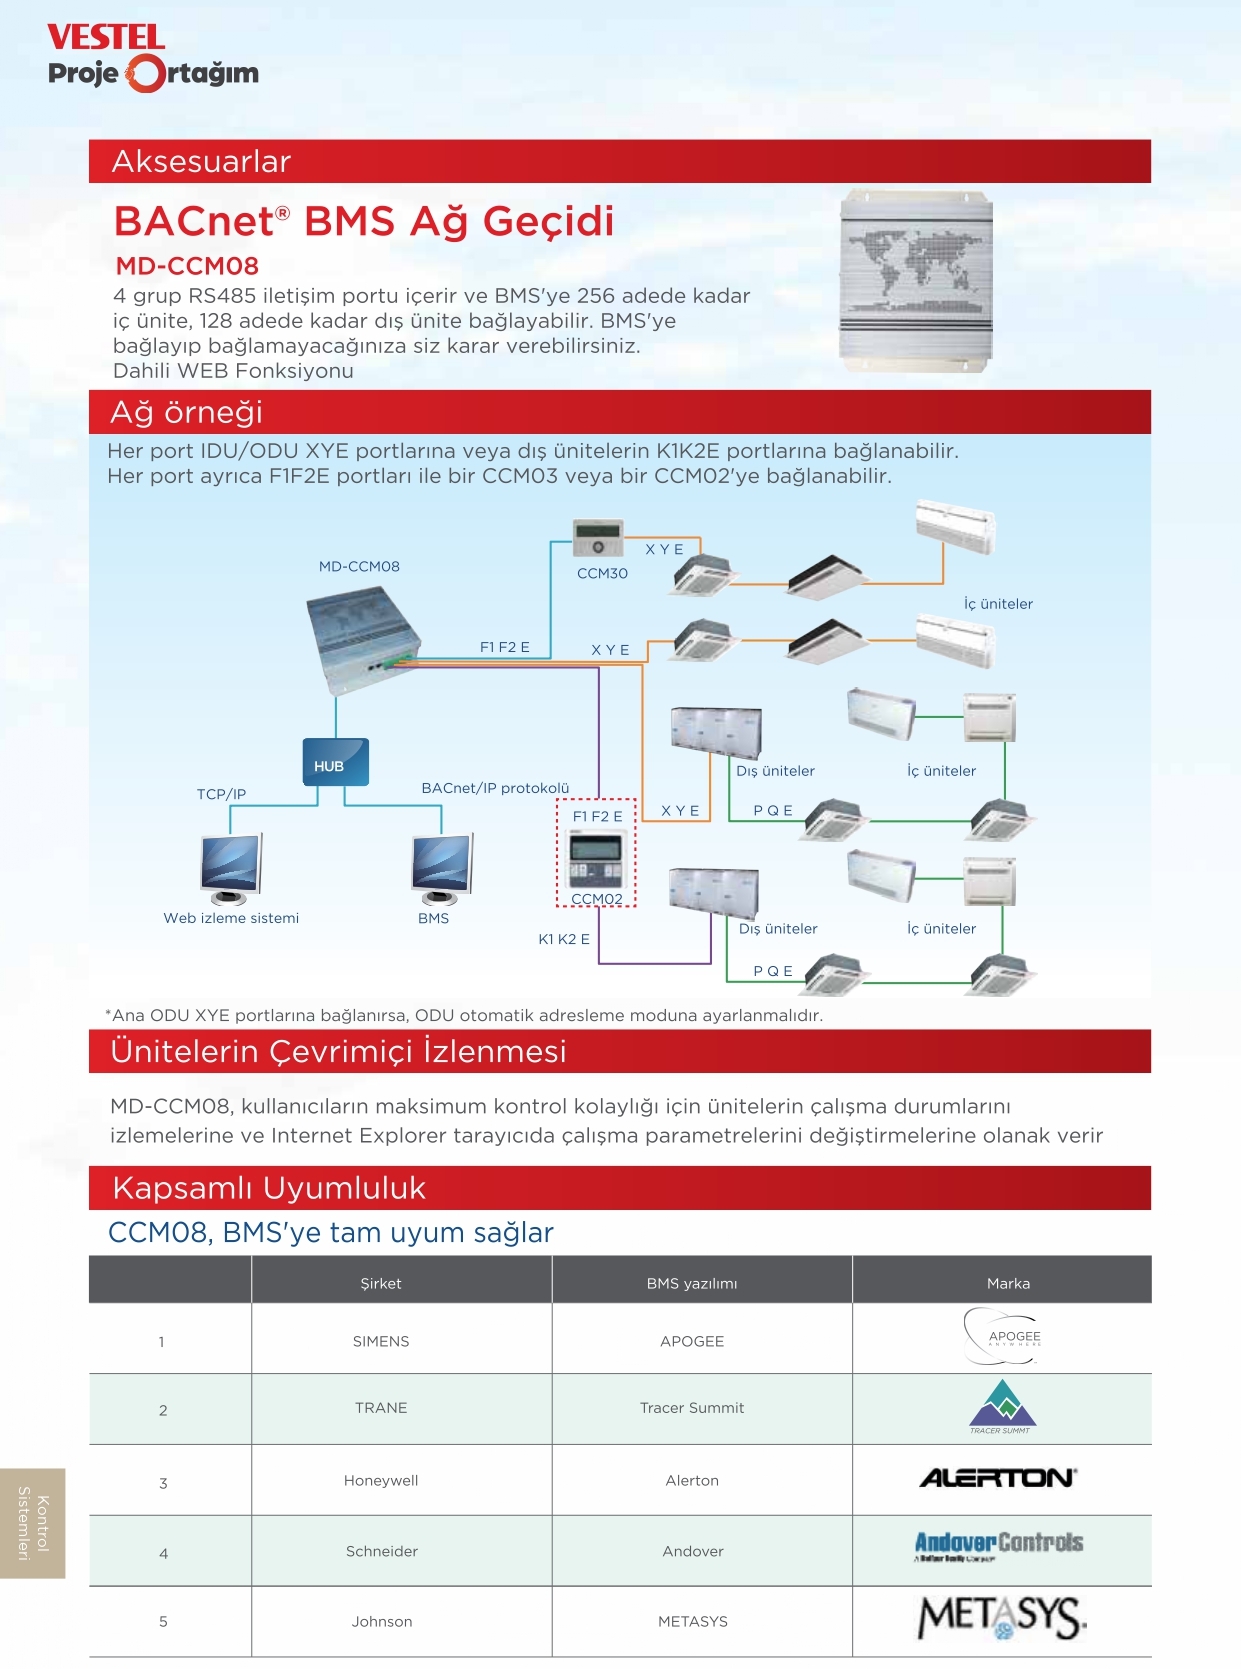 Aksesuarlar (BACnet® BMS Ağ Geçidi Aksesuarlar MD-CCM08)-ürün özellikleri görseli